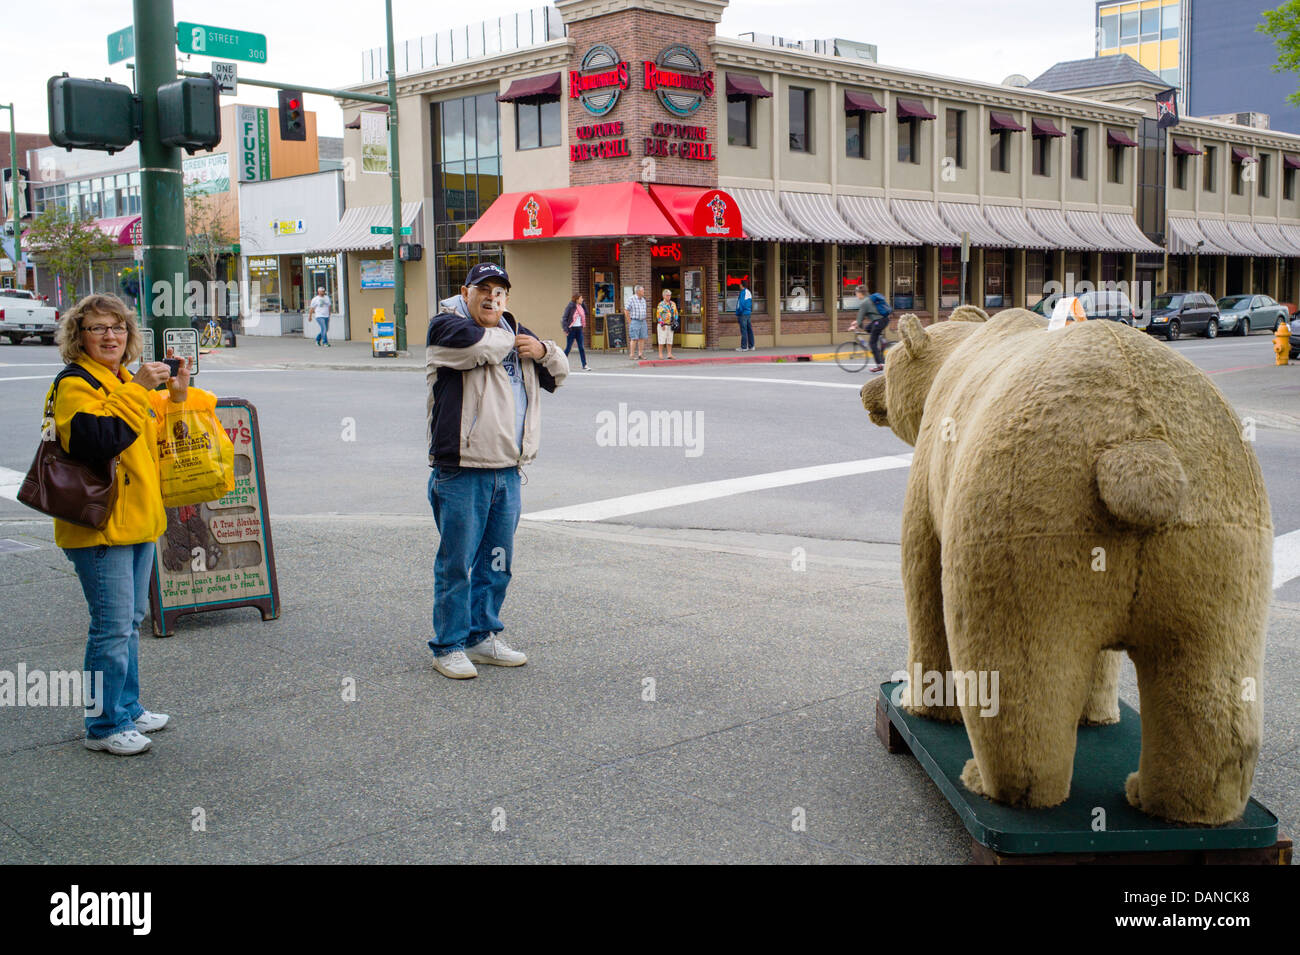 Touristen fotografieren einen gefälschten Grizzly-Bären auf dem Bürgersteig, Anchorage, Alaska, USA Stockfoto